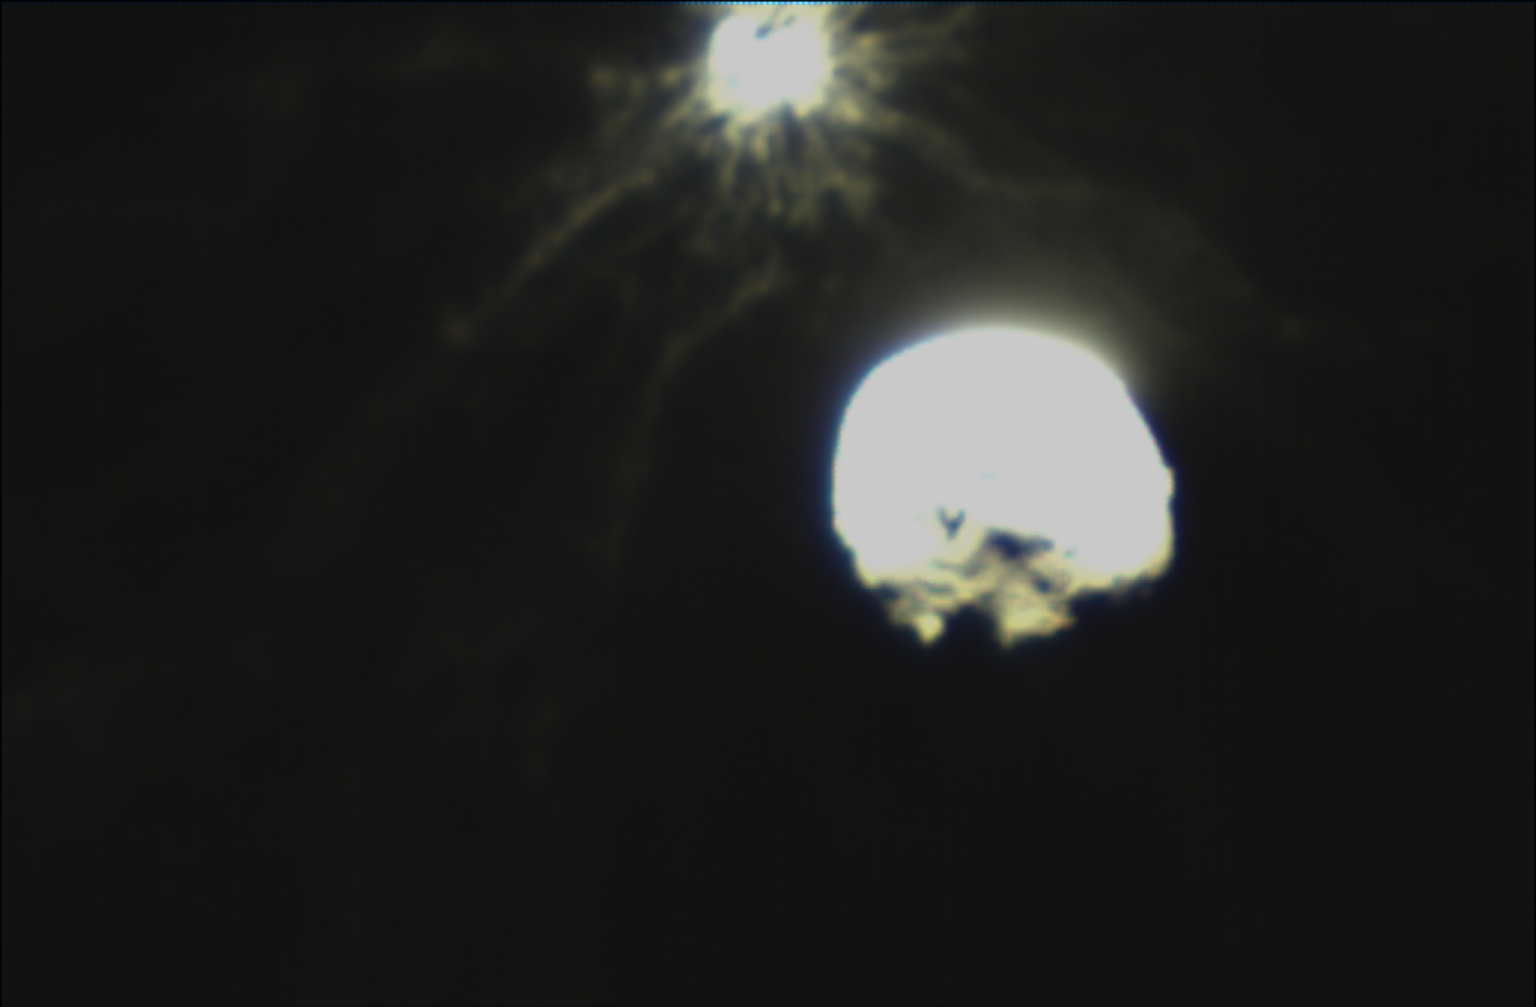 LISIACube kaameraga üles võetud DART põrkel tekkinud tulevärk: suurem objekt on asteroid Didymos, mille umber tiirleval Dimorphosel on jäädvustatud plahatuse kuma.